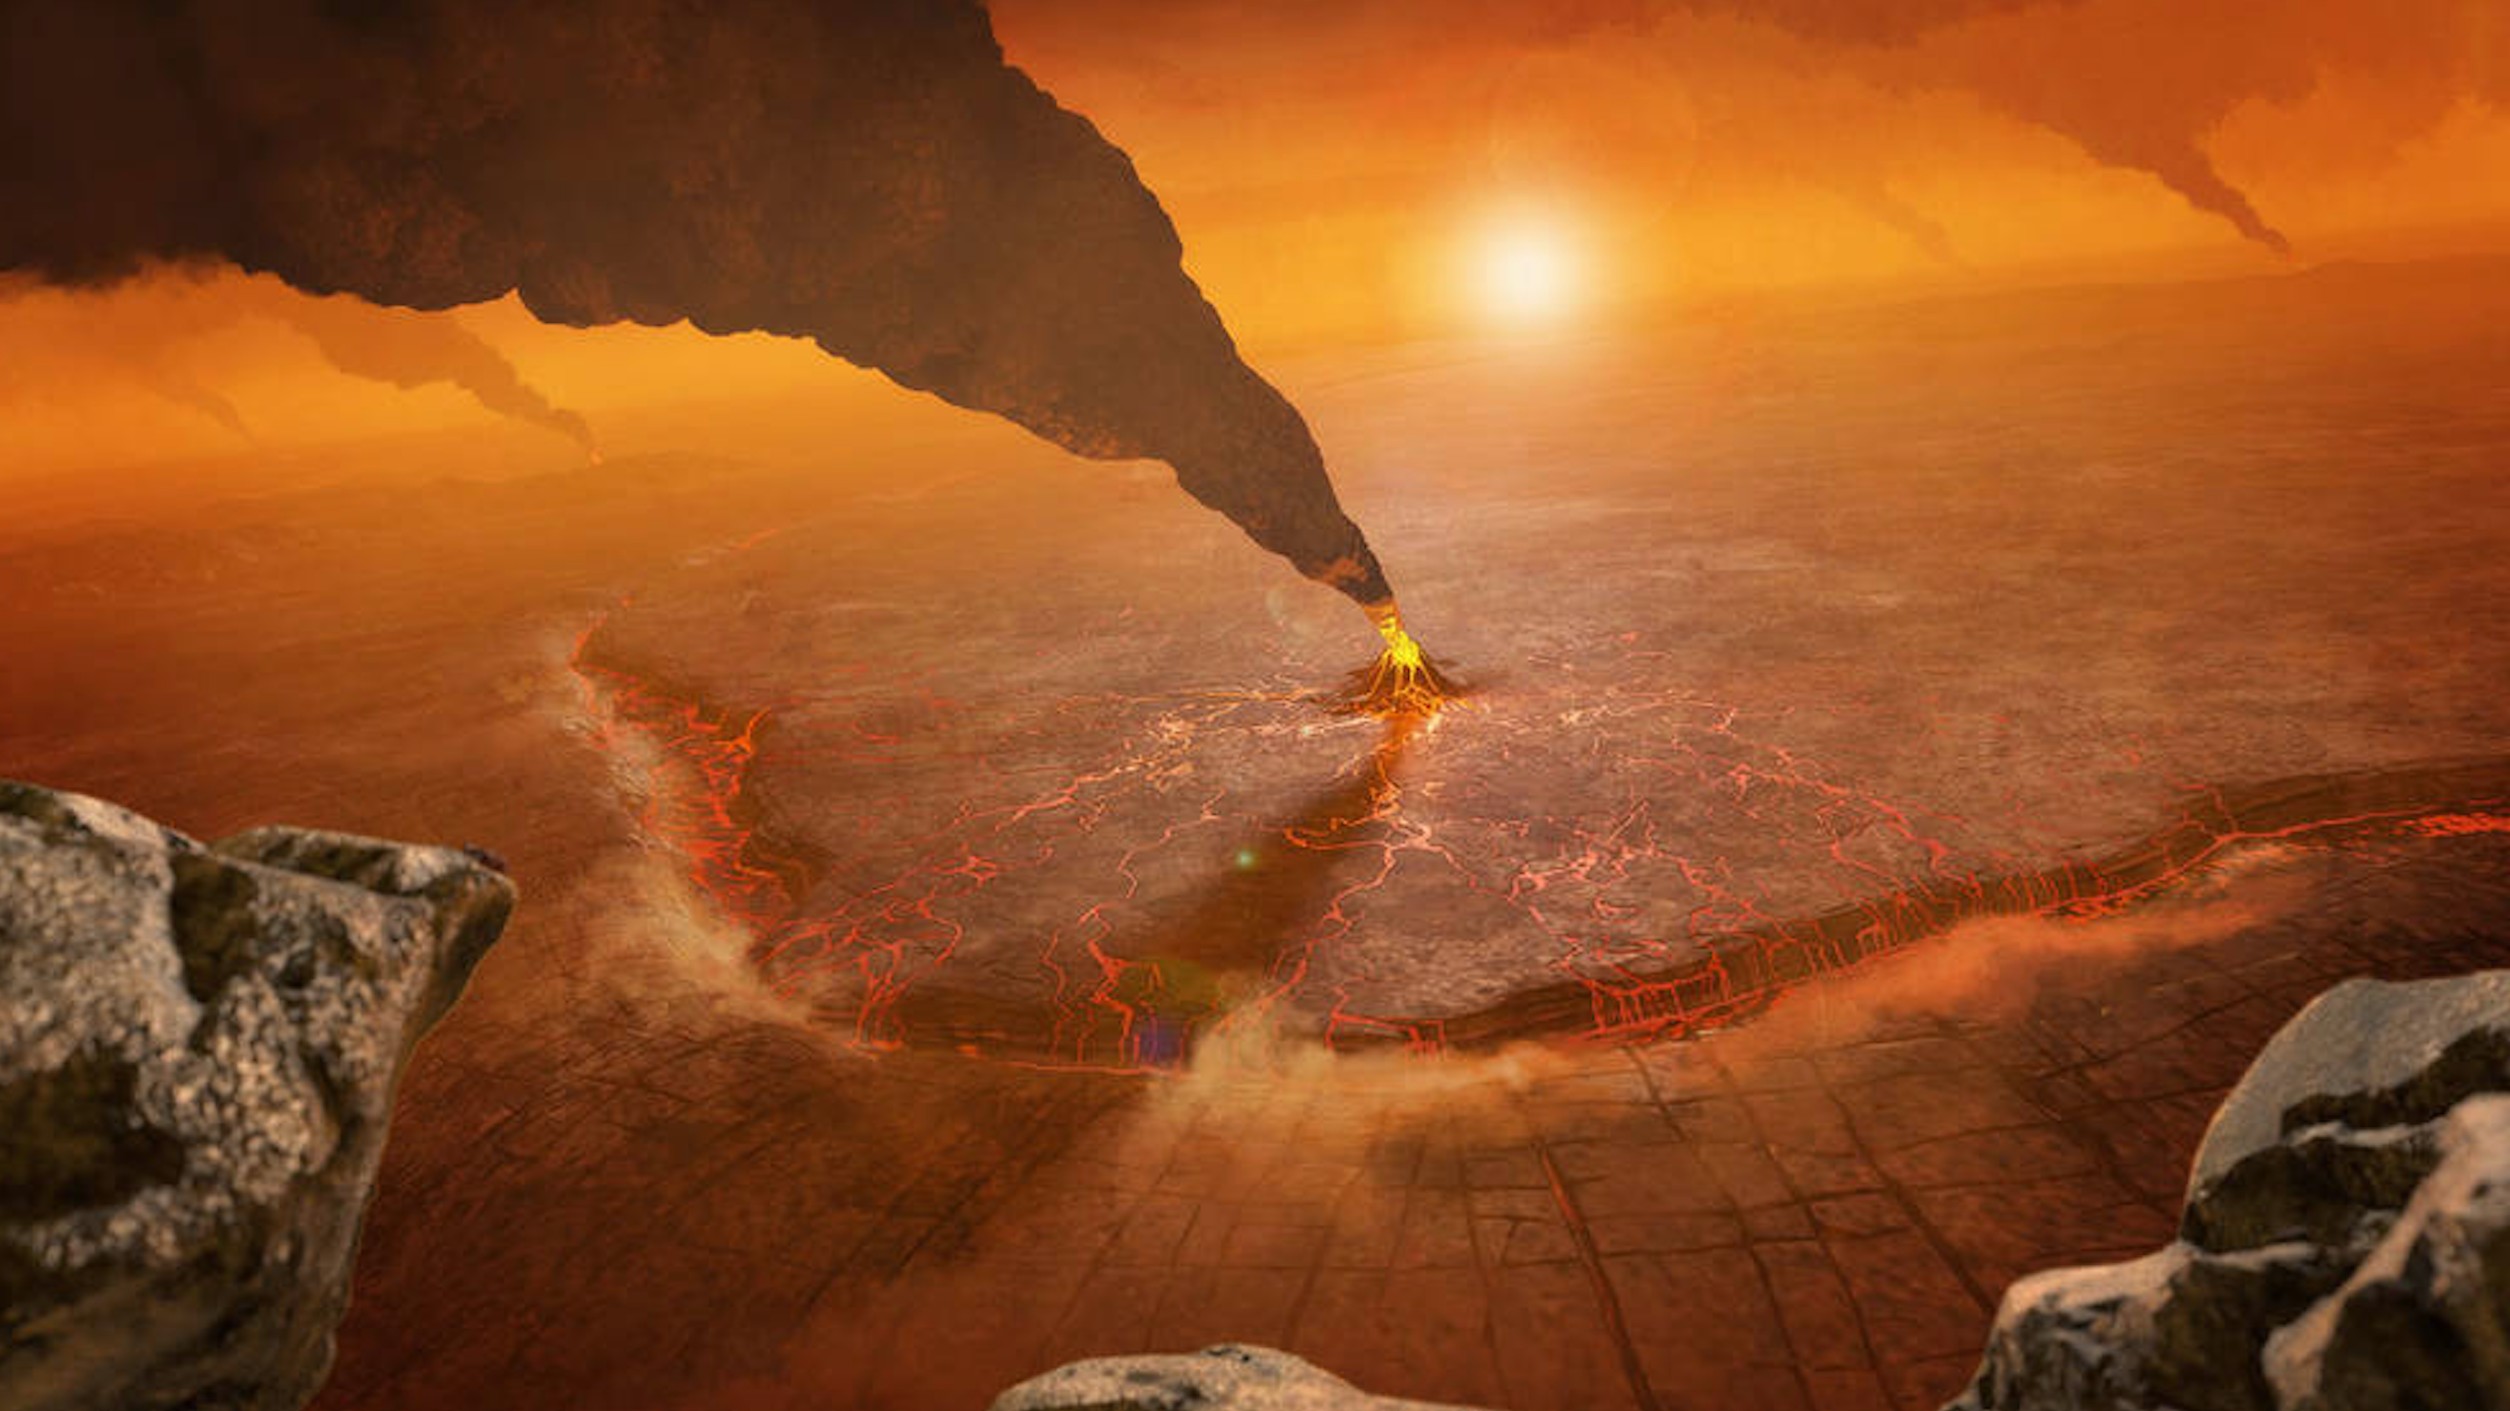 Venus Is Erupting with Active Volcanoes, Scientists Find